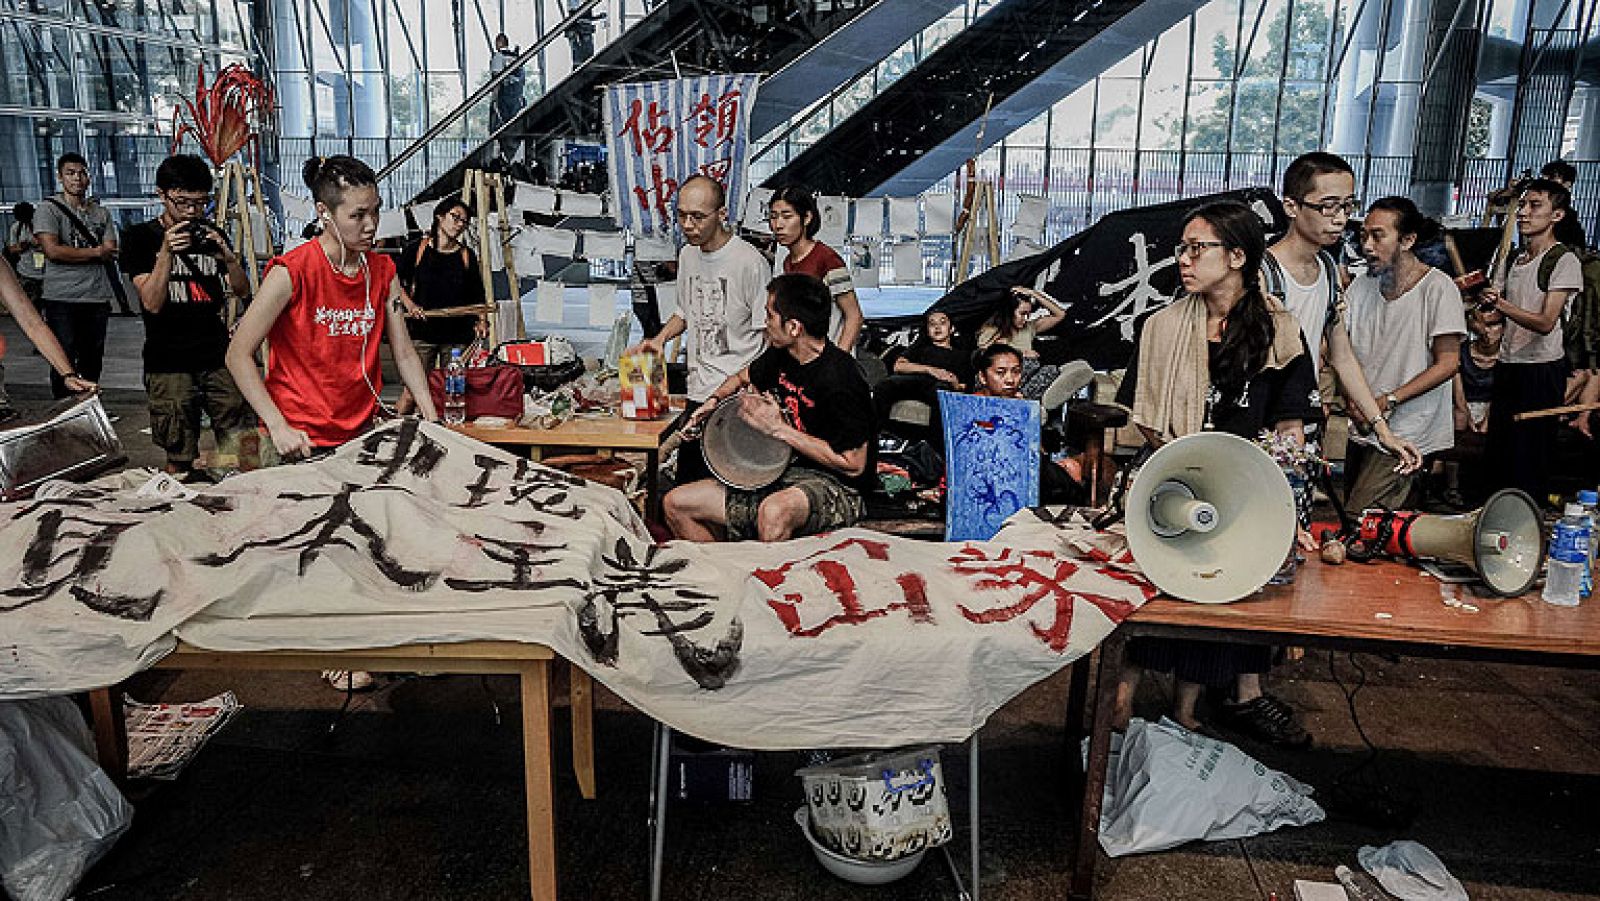 El campamento del movimiento 'occupy' en Hong Kong desalojado tras 10 meses